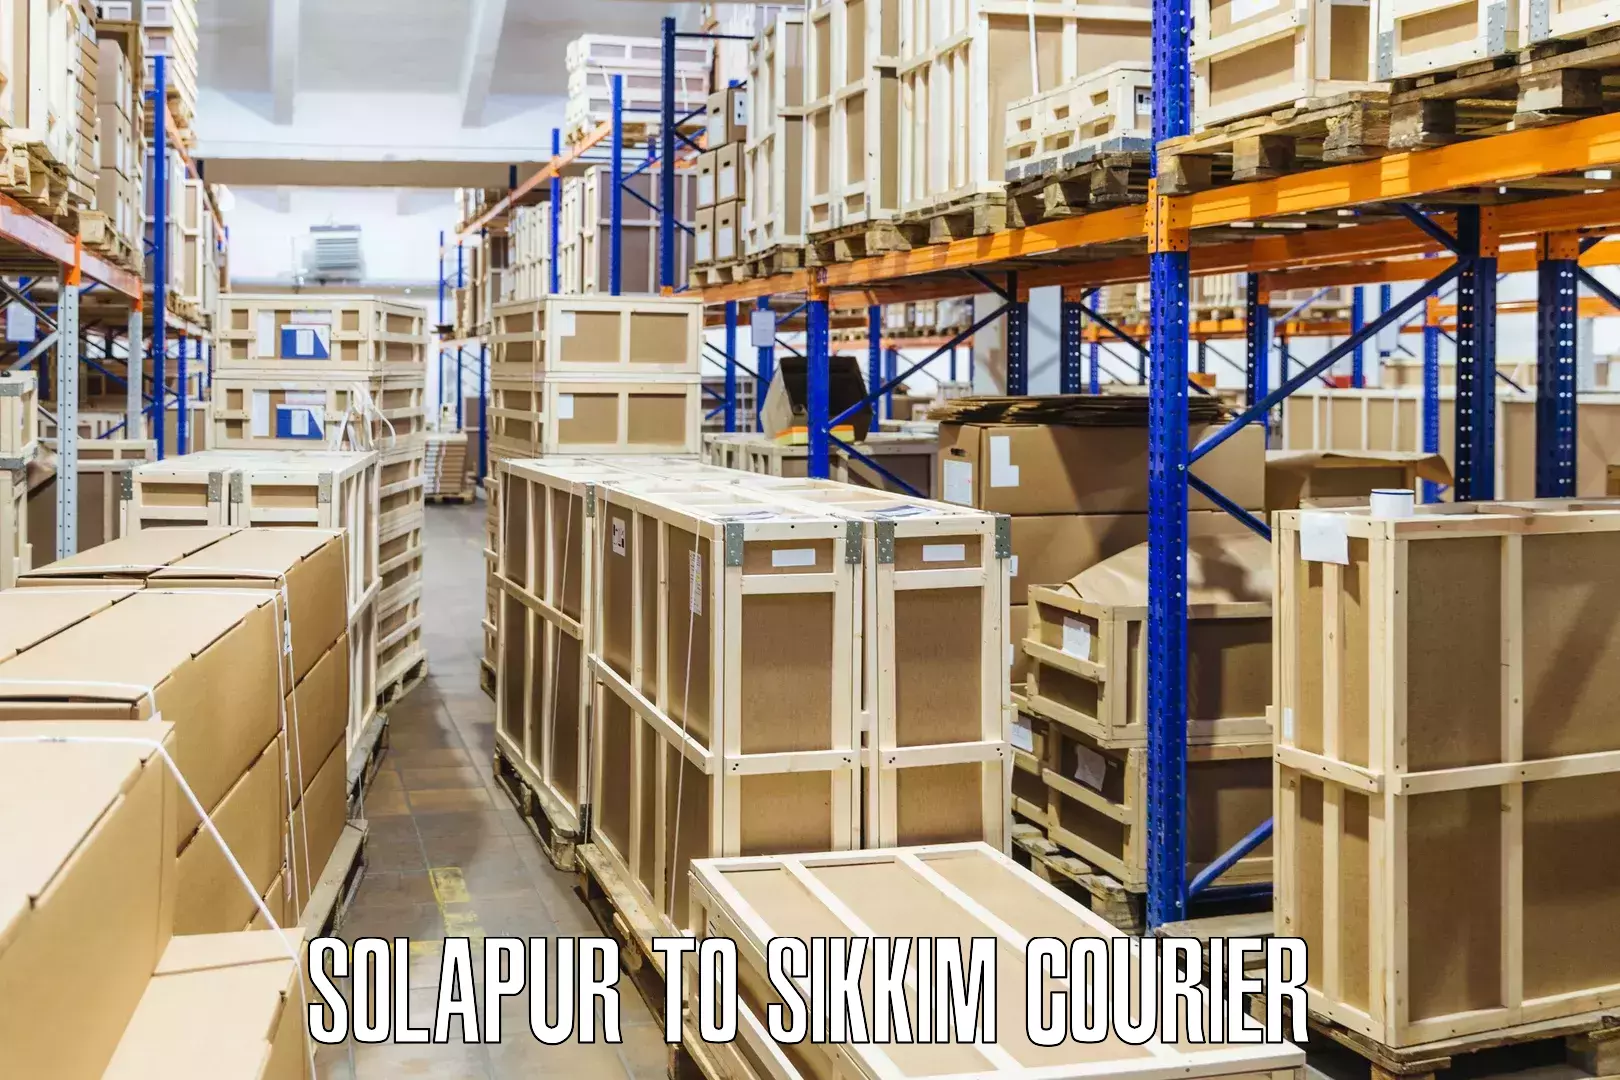 Door-to-door shipping Solapur to Sikkim